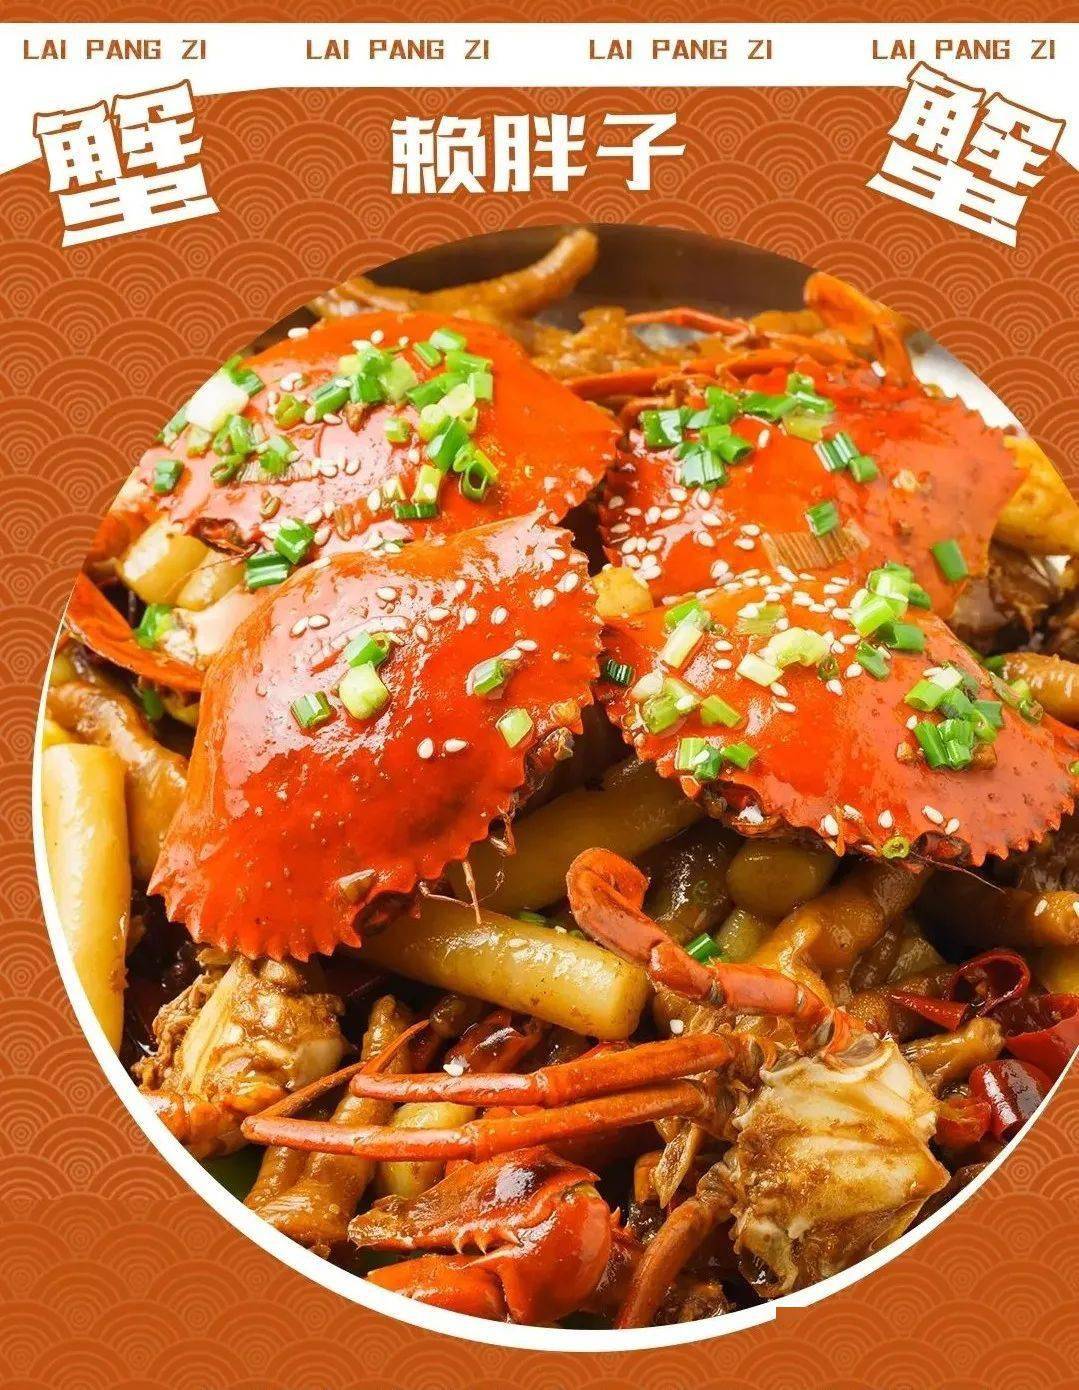 赖胖子肉蟹煲活动福利3～4人套餐【套餐包含:大份肉蟹煲,三份米饭